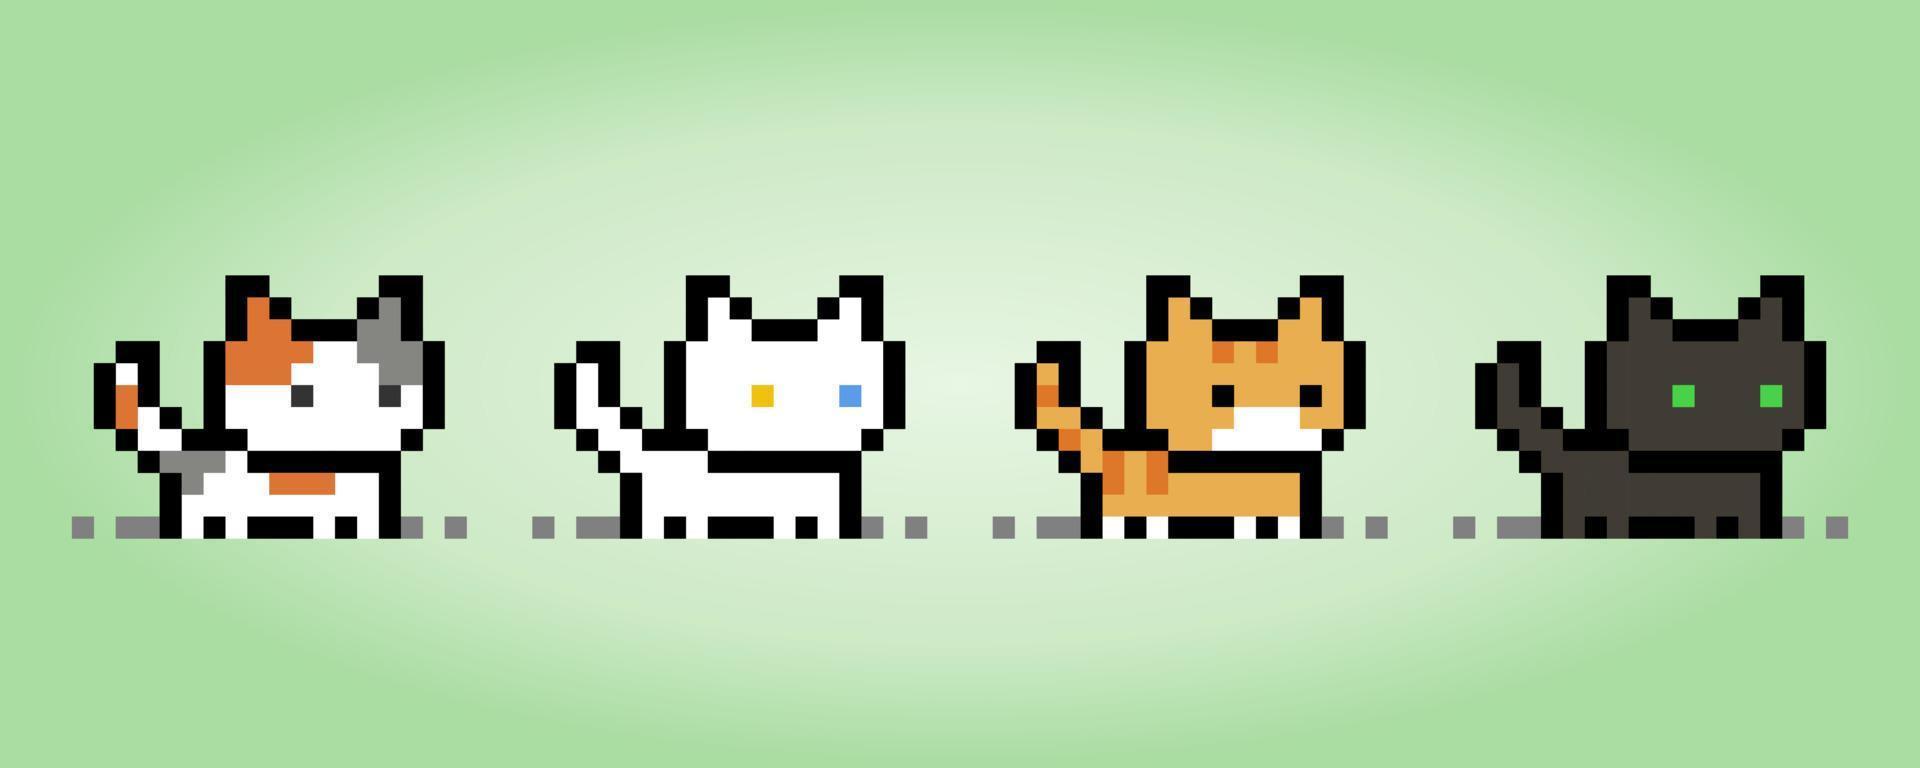 pixel 8 bitars kattsamling. djur för speltillgångar i vektorillustration. vektor